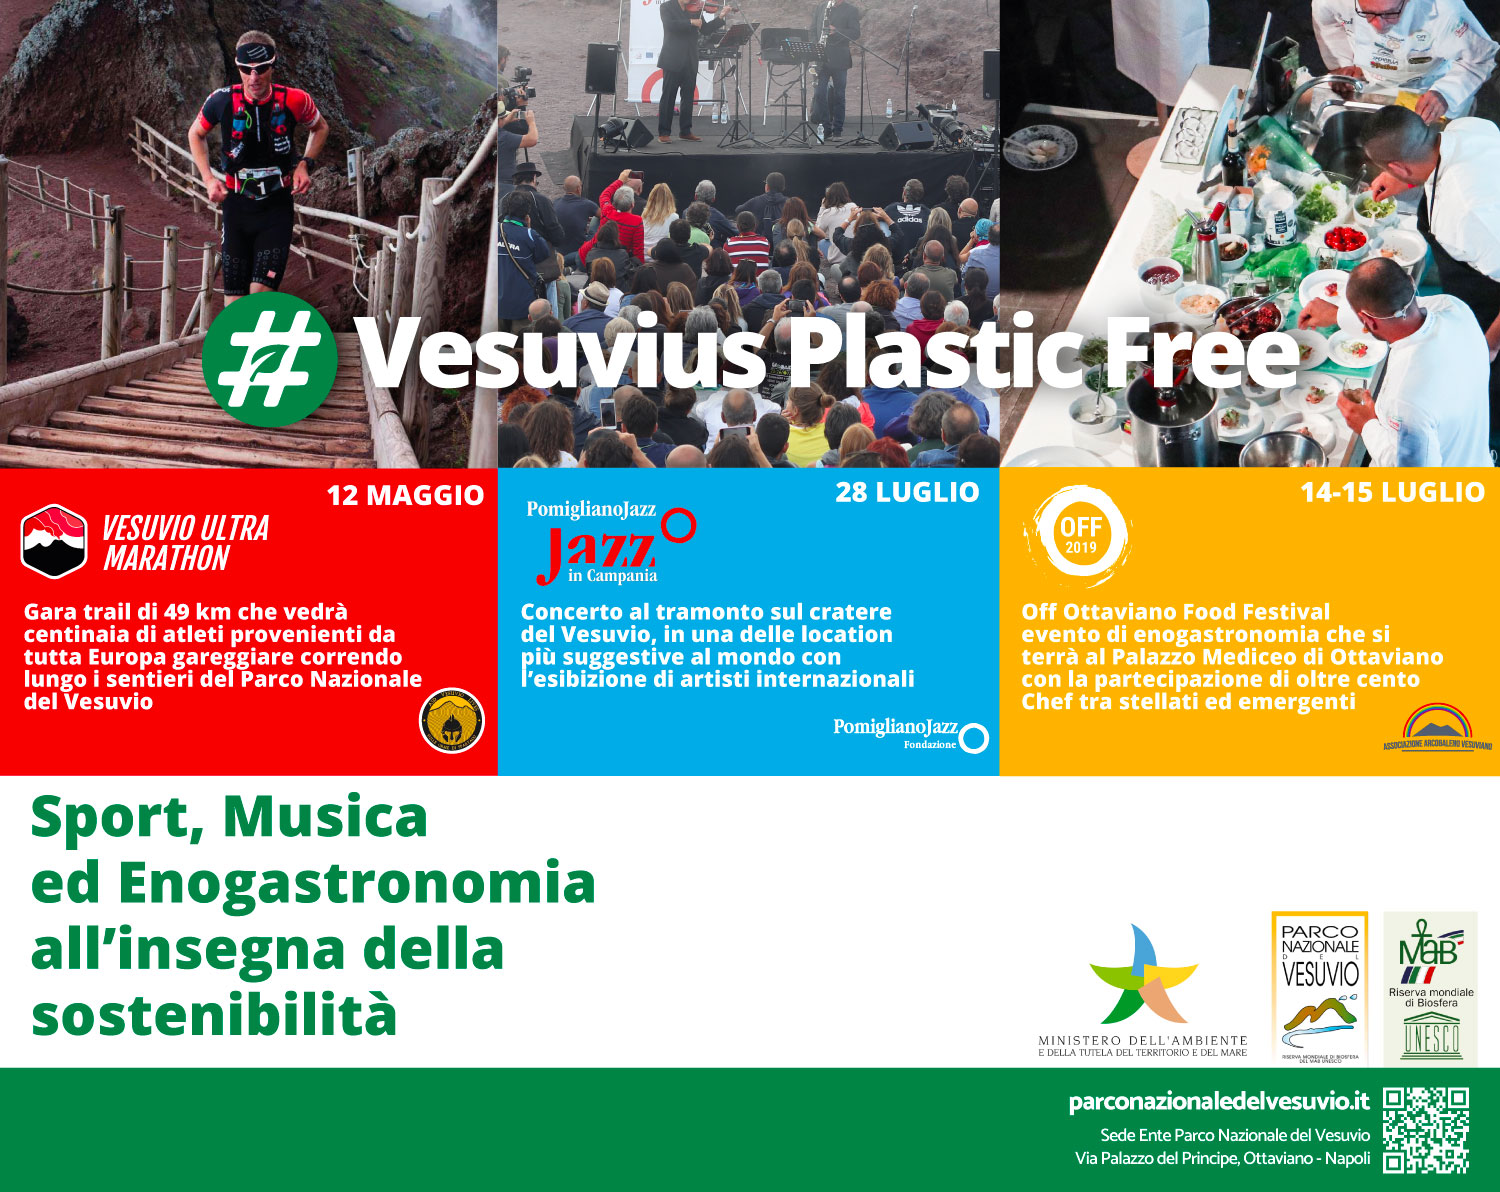 Vesuvius Plastic Free | Ente Parco Nazionale del Vesuvio